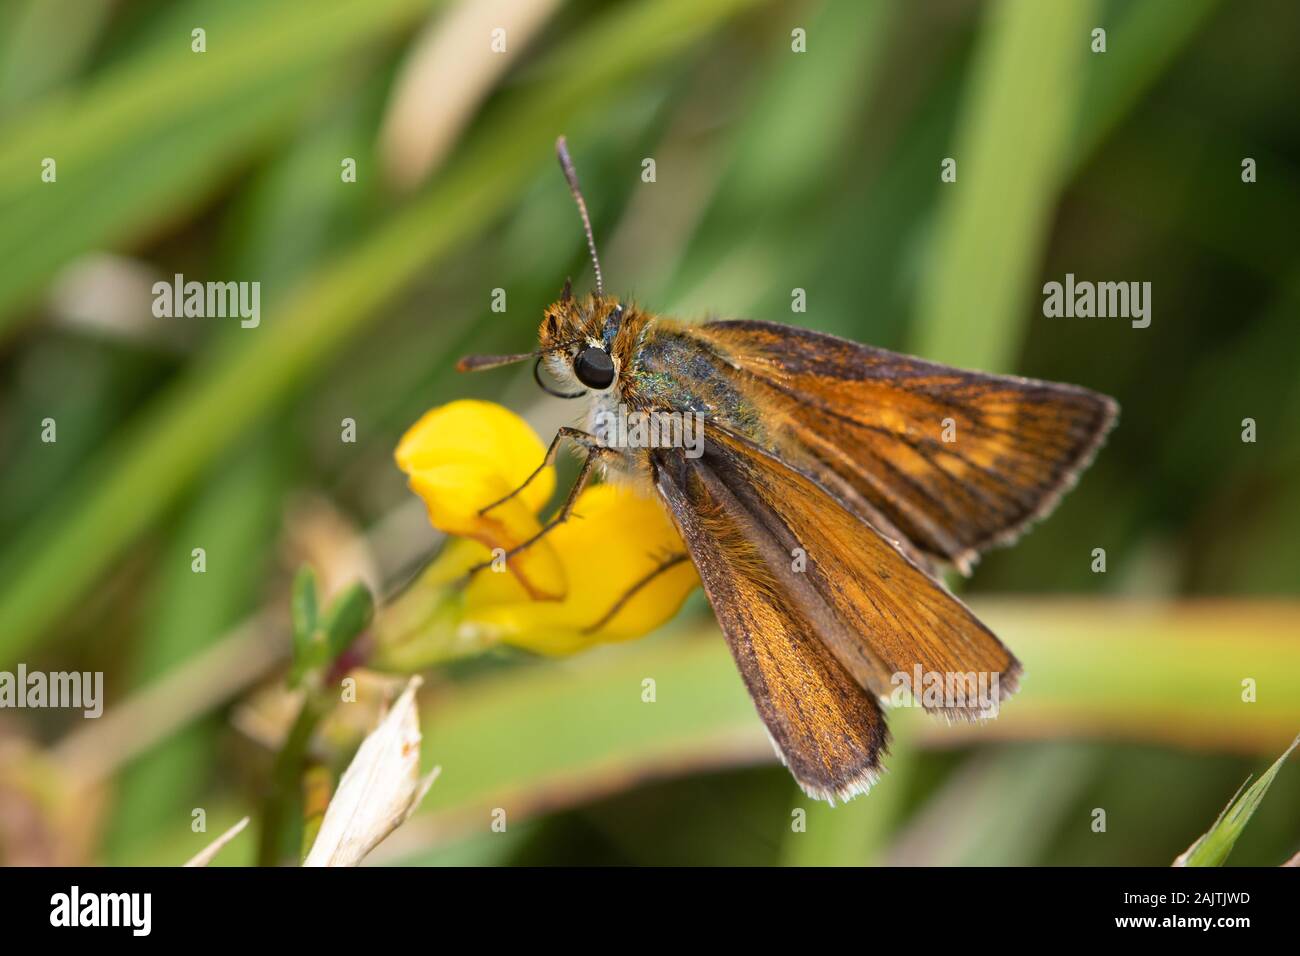 Skipper (Thymelicus acteon Lulworth) se nourrissant d'un trèfle jaune (Fabaceae) flower Banque D'Images